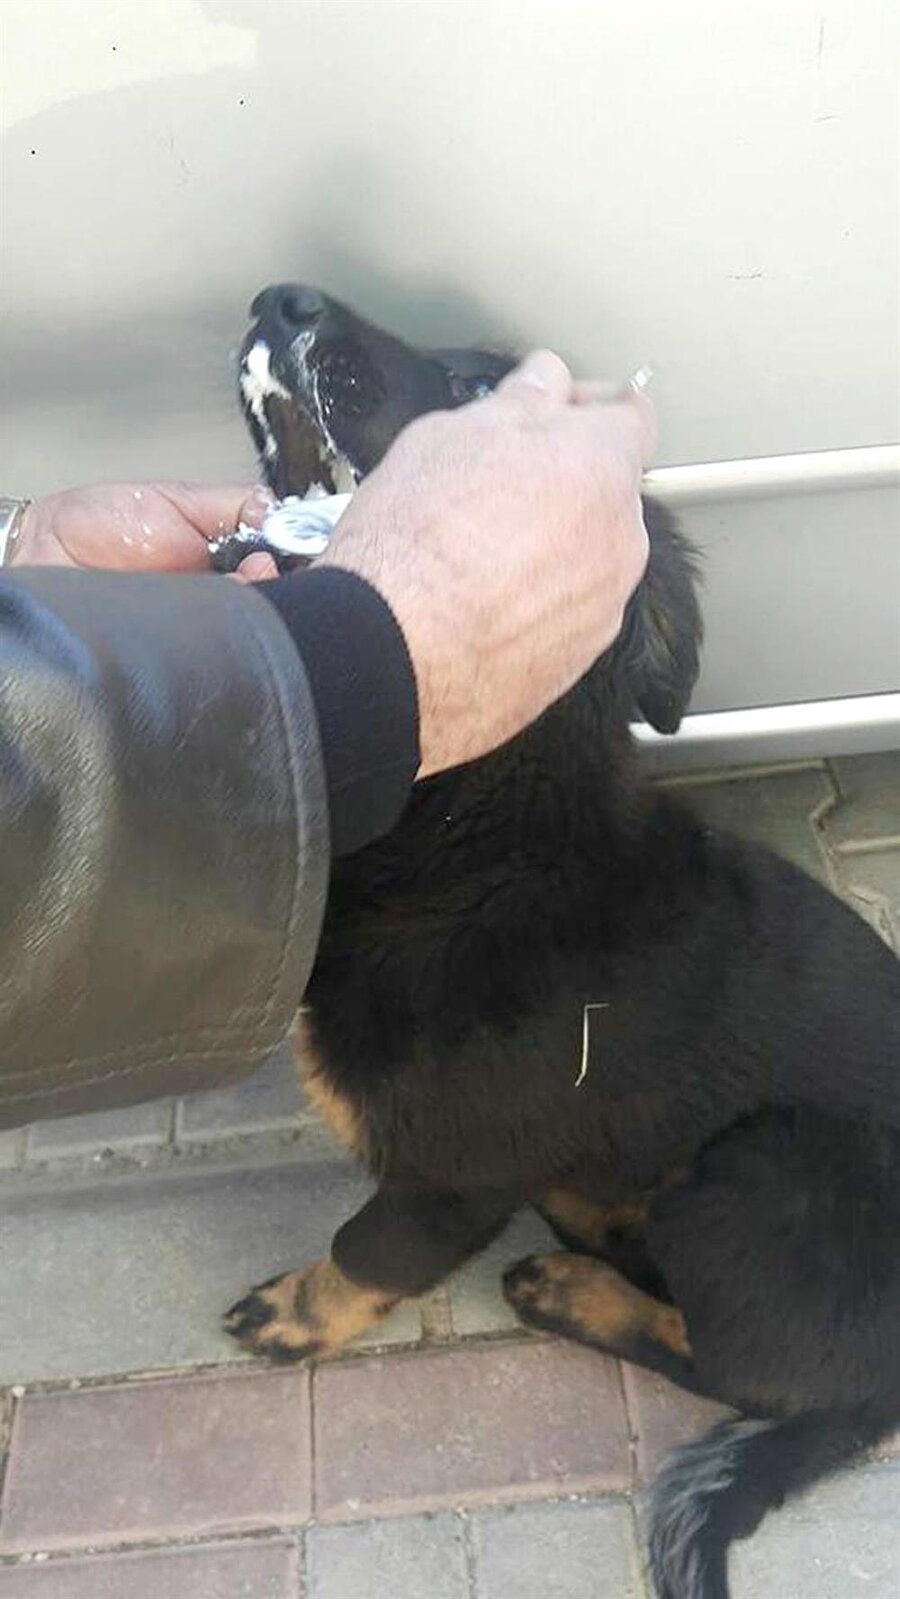 Köpek kurtarıldı
Mahmutlar Mahallesi Barbaros Caddesi'nde dün sabah, 9 sokak kedisinin yerde hareketsiz yattığını, 1 köpeğin de yerde kıvrandığını fark eden hayvanseverler durumu yetkilere haber verdi. İhbar üzerine gelen Alanya Belediyesi Veteriner İşleri Müdürlüğü görevlileri zehirlendiği düşünülen kedileri poşete koyarak aldı. Köpek ise çevredekilerin yoğurt ve ayran verip kusturması sonrası kurtarıldı.